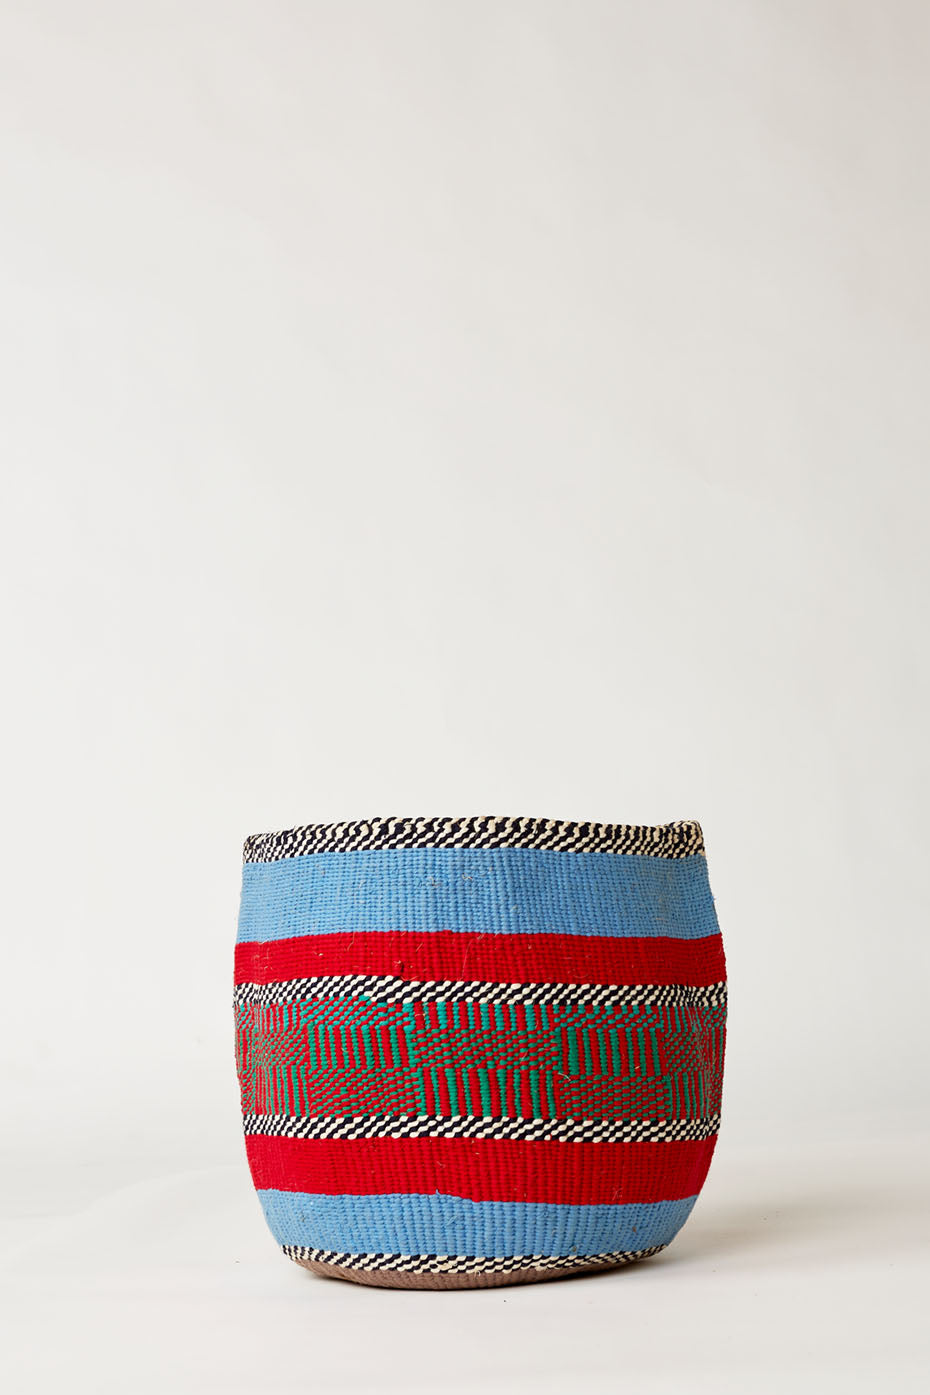 Blue & Red Large Wool Basket